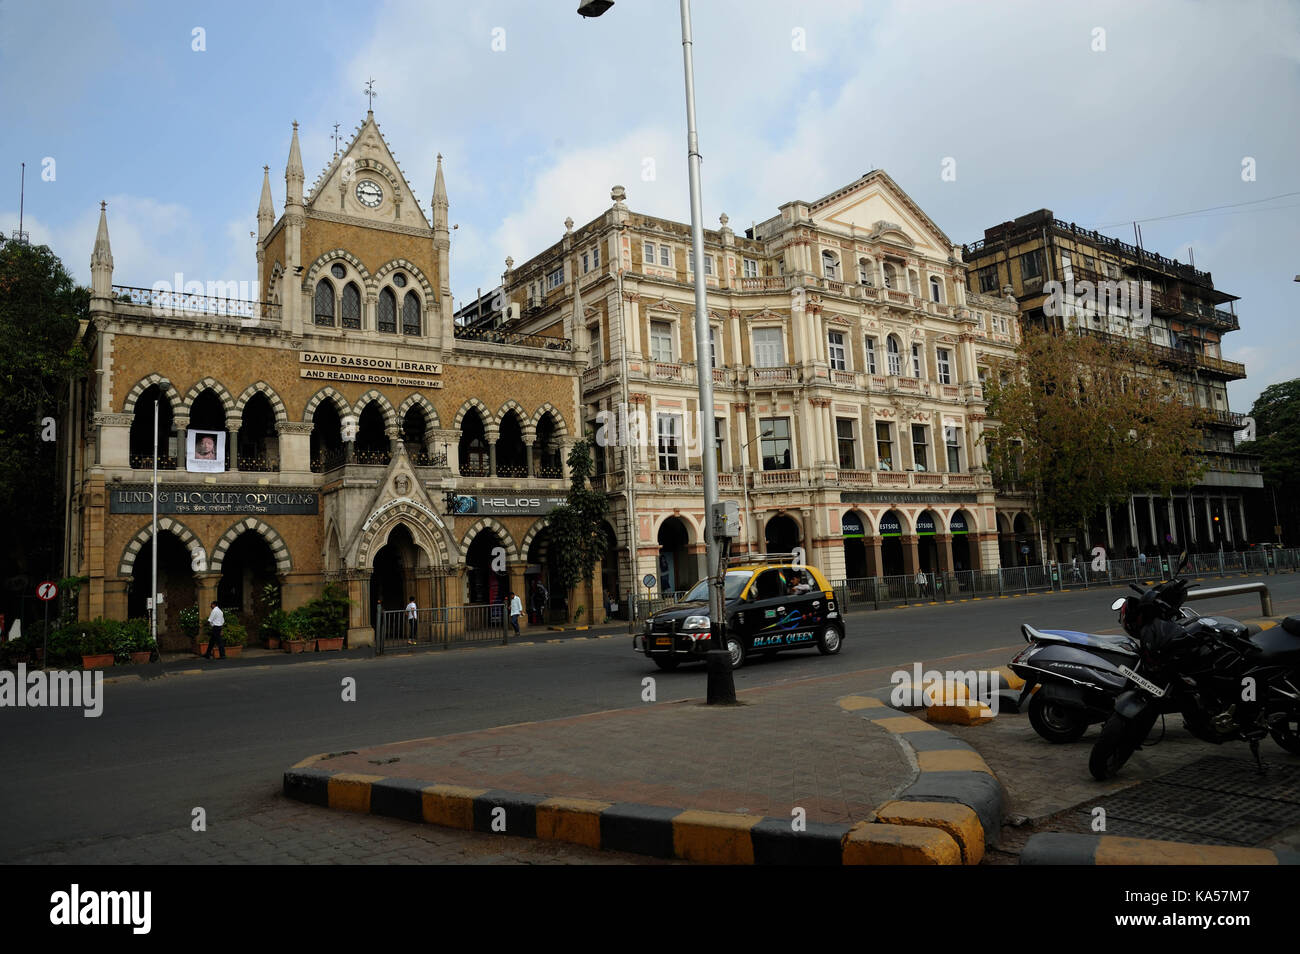 david sassoon library and esplanade mansion, mumbai, maharashtra, India, Asia Stock Photo